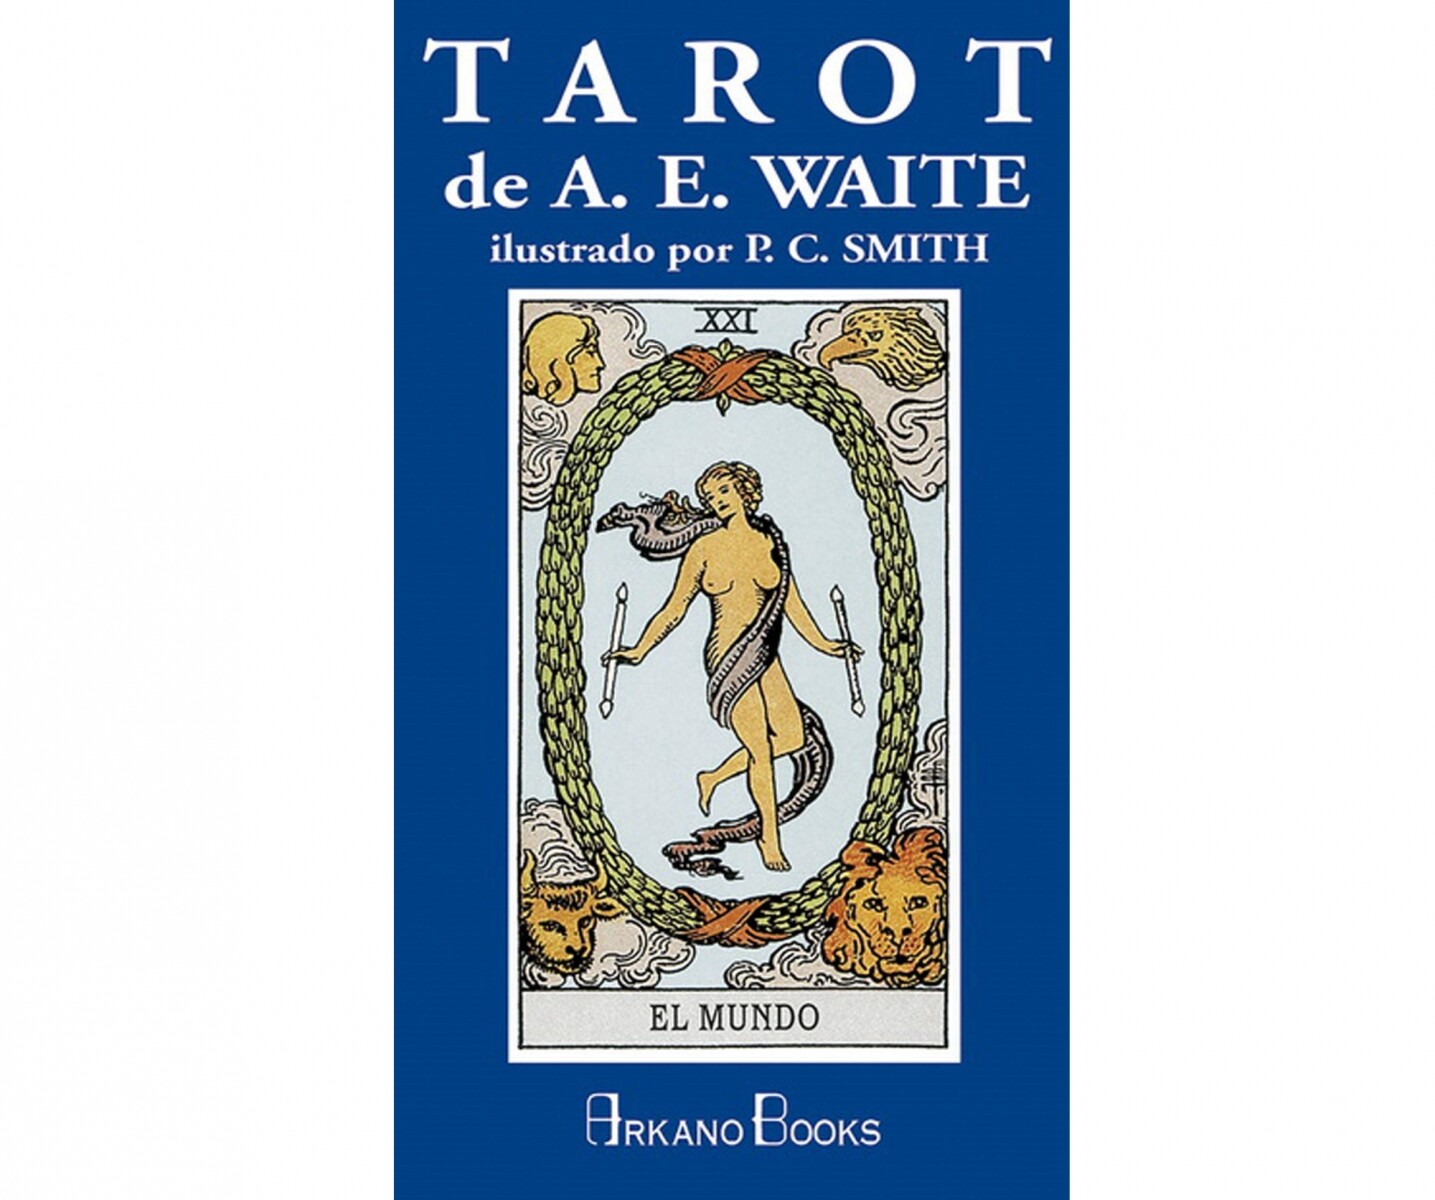 CARTAS TAROT (ESPAÑOL), A.E. WAITE